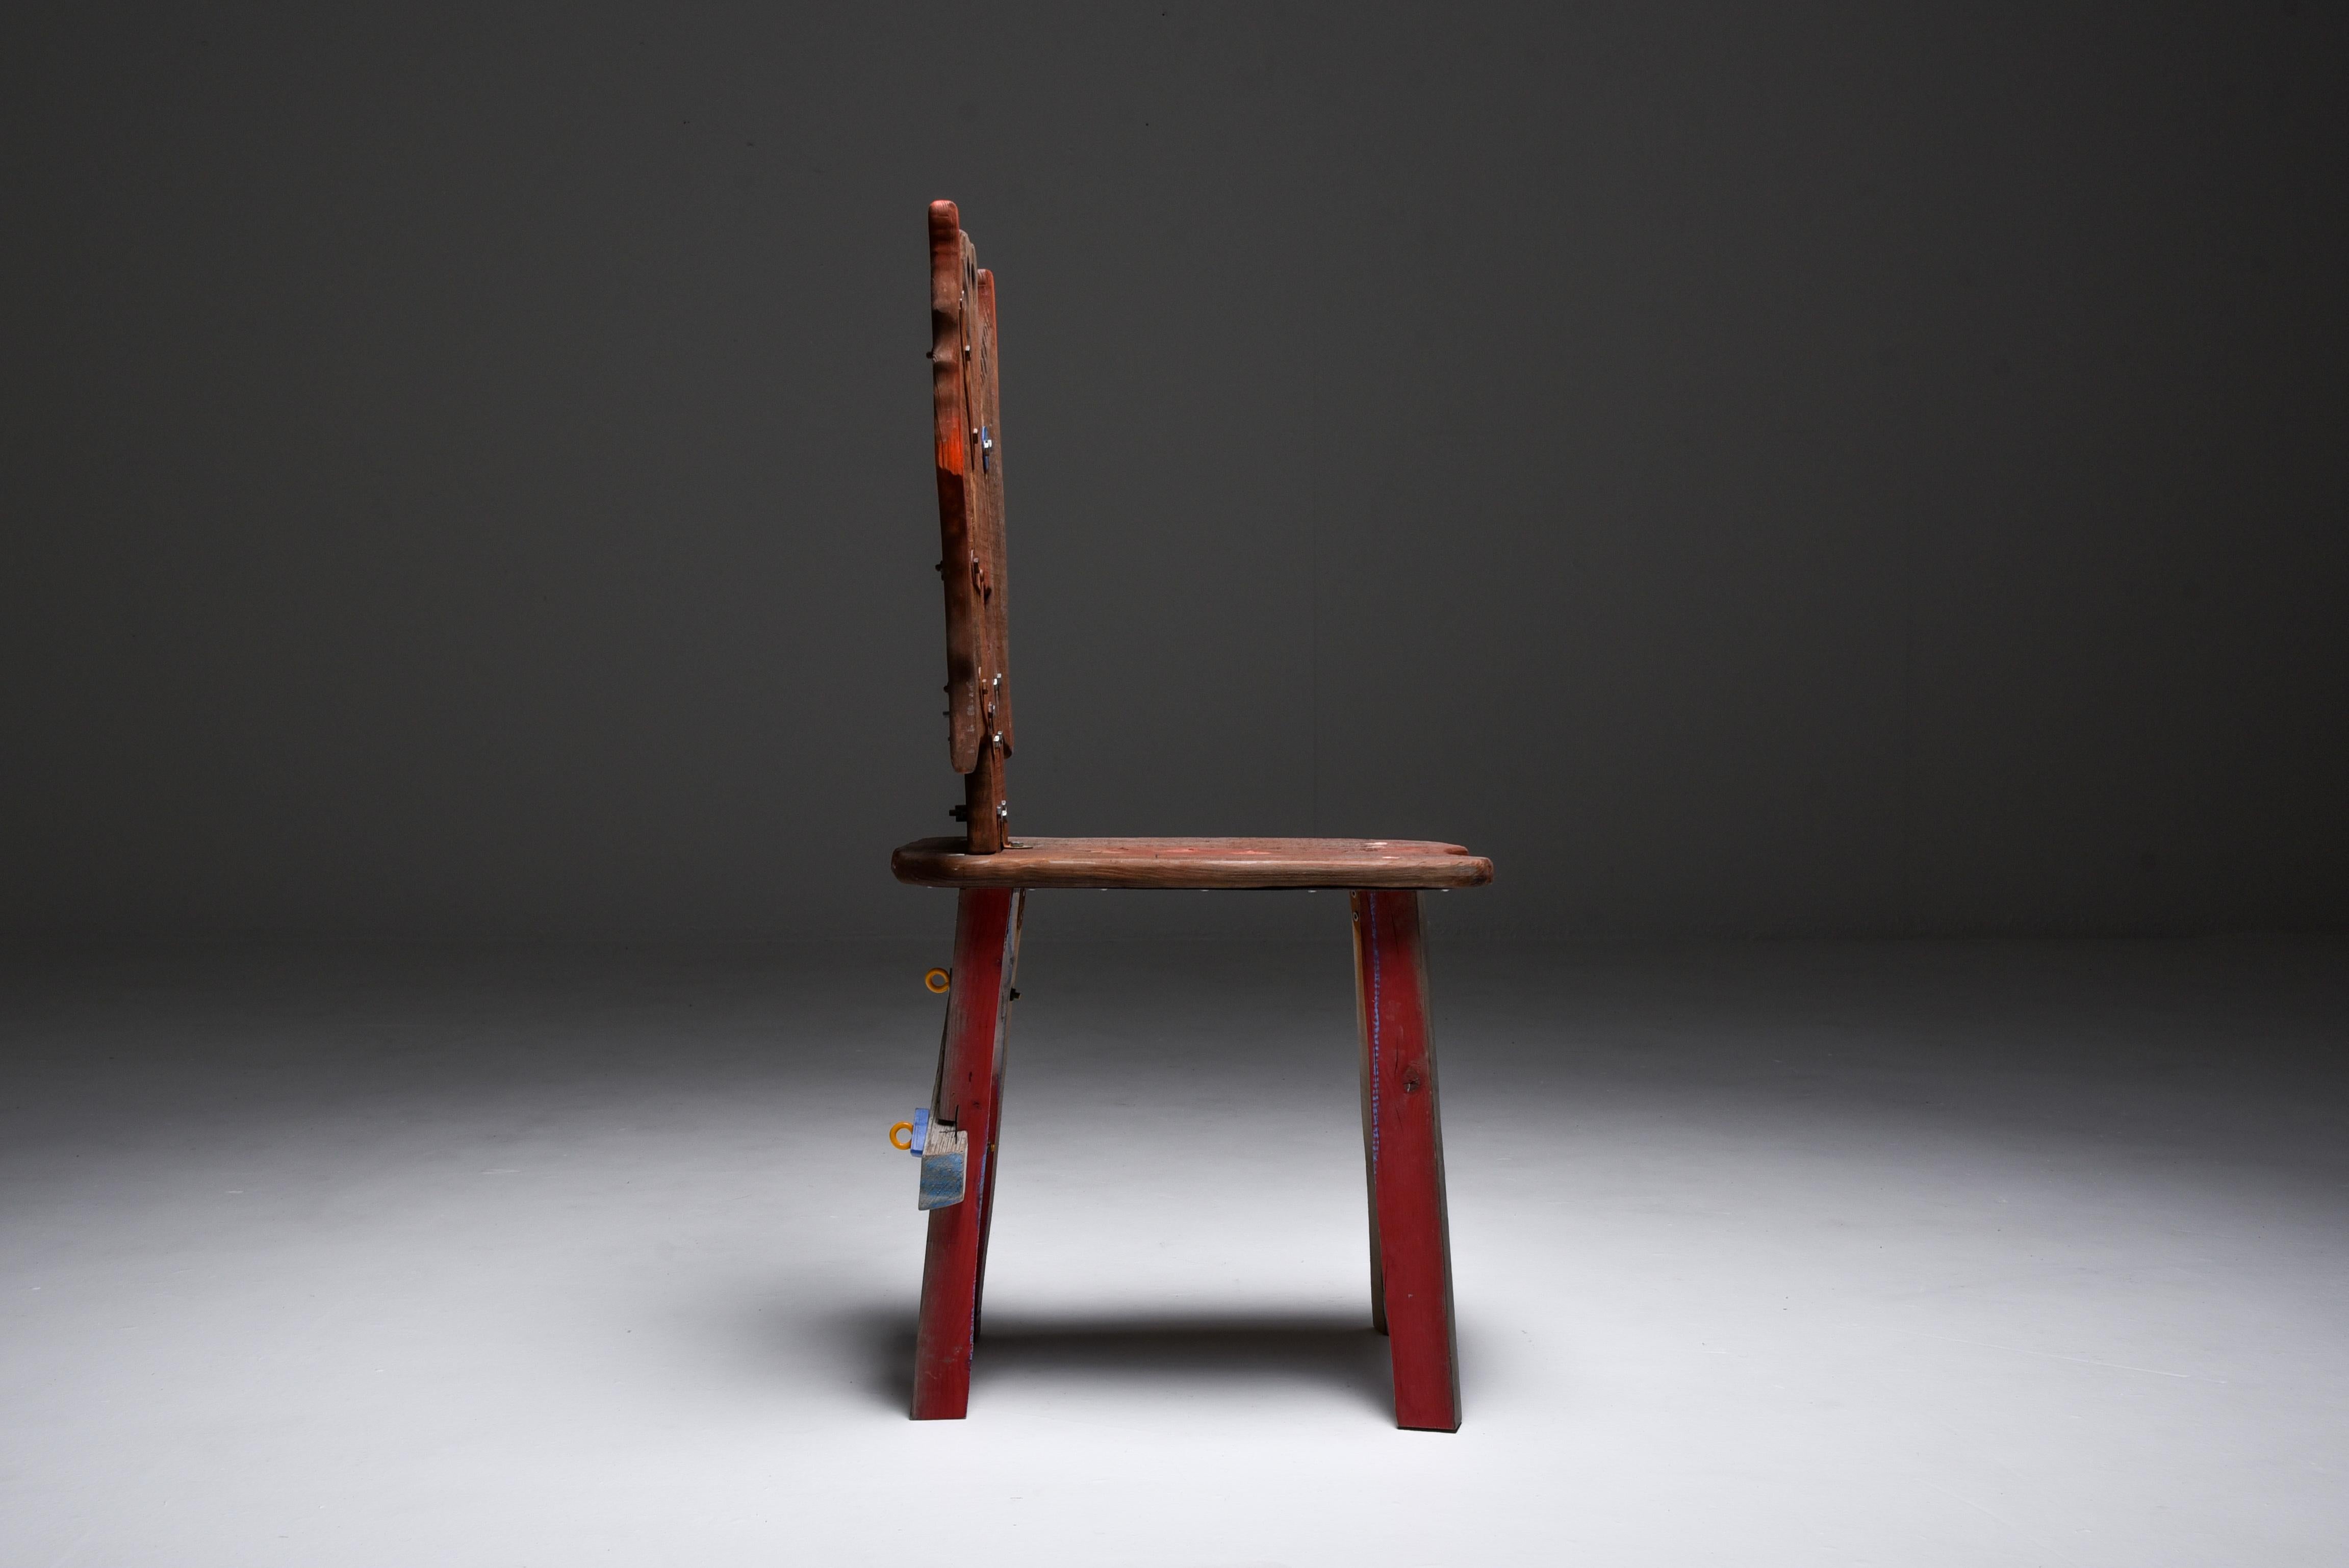 Rustic Folks 29 Chair by Serban Ionescu